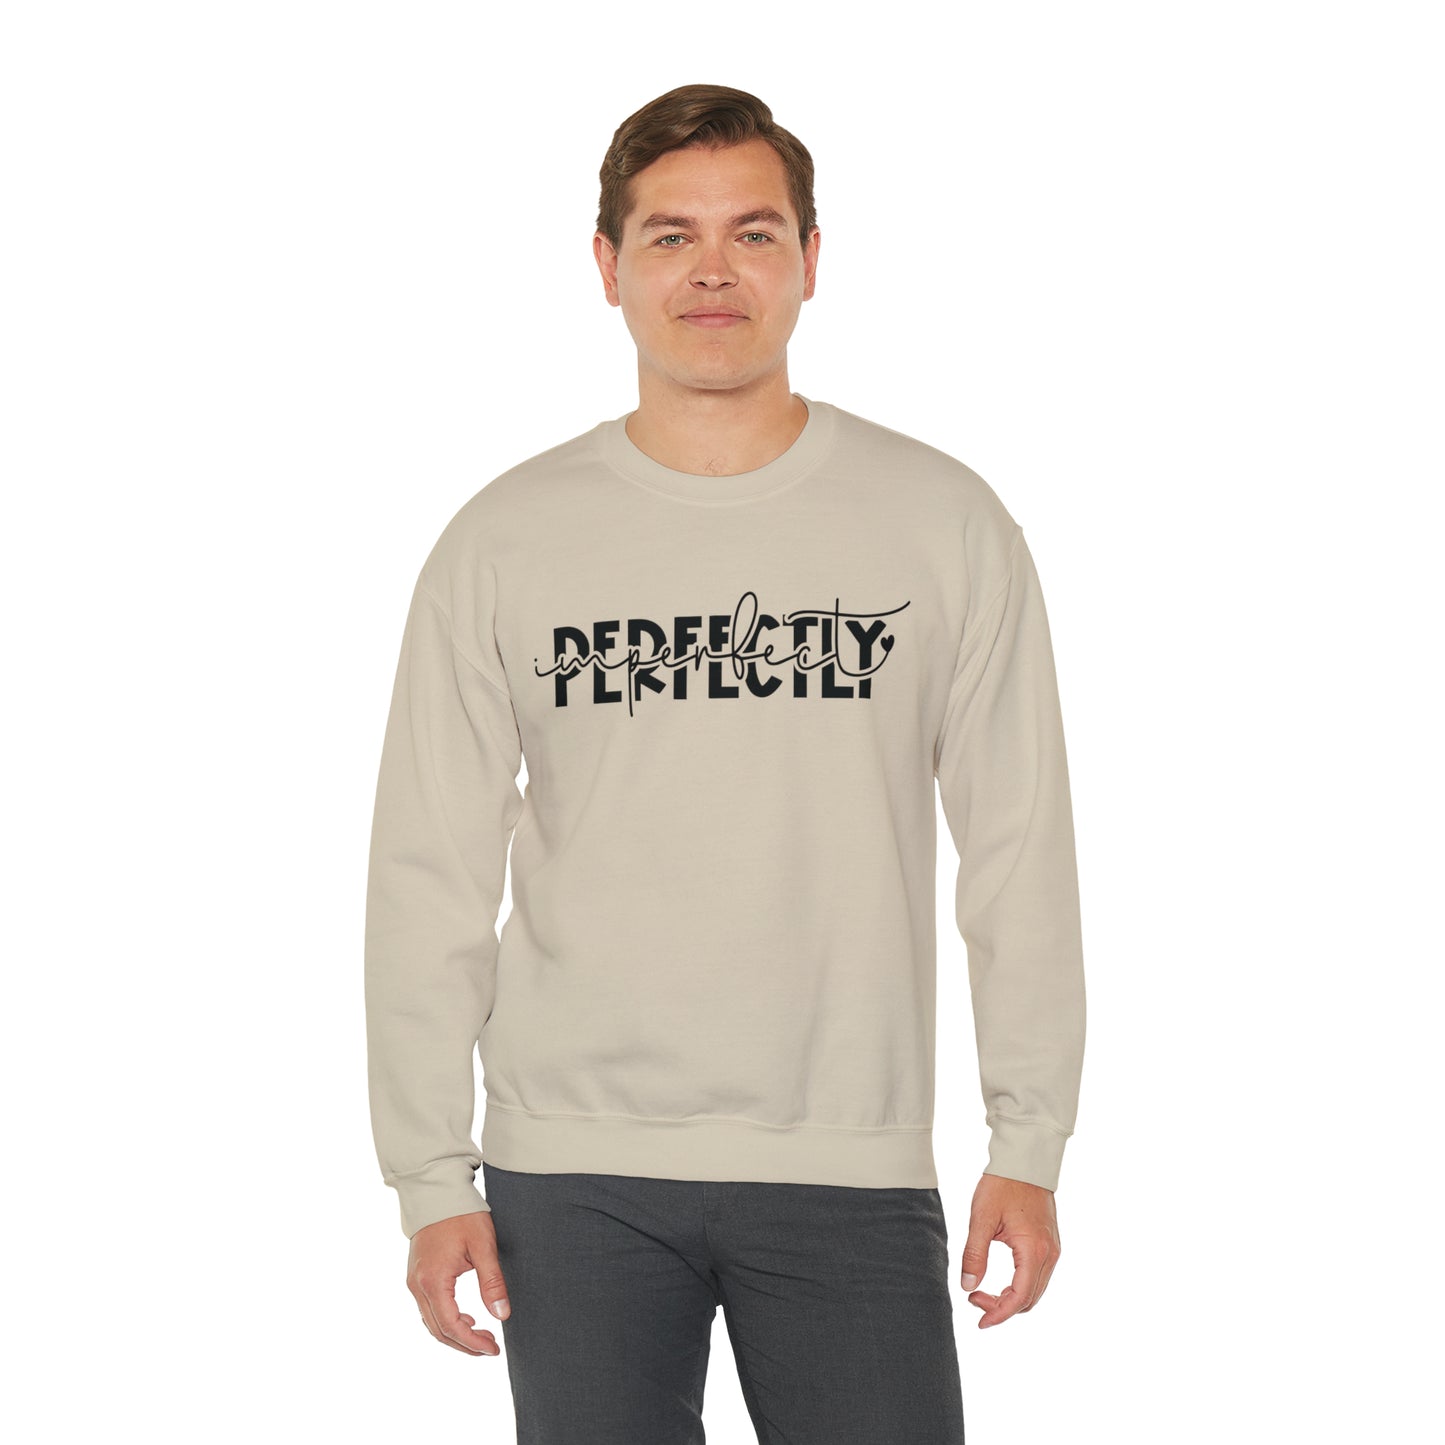 Perfectly Imperfect Crewneck Sweatshirt